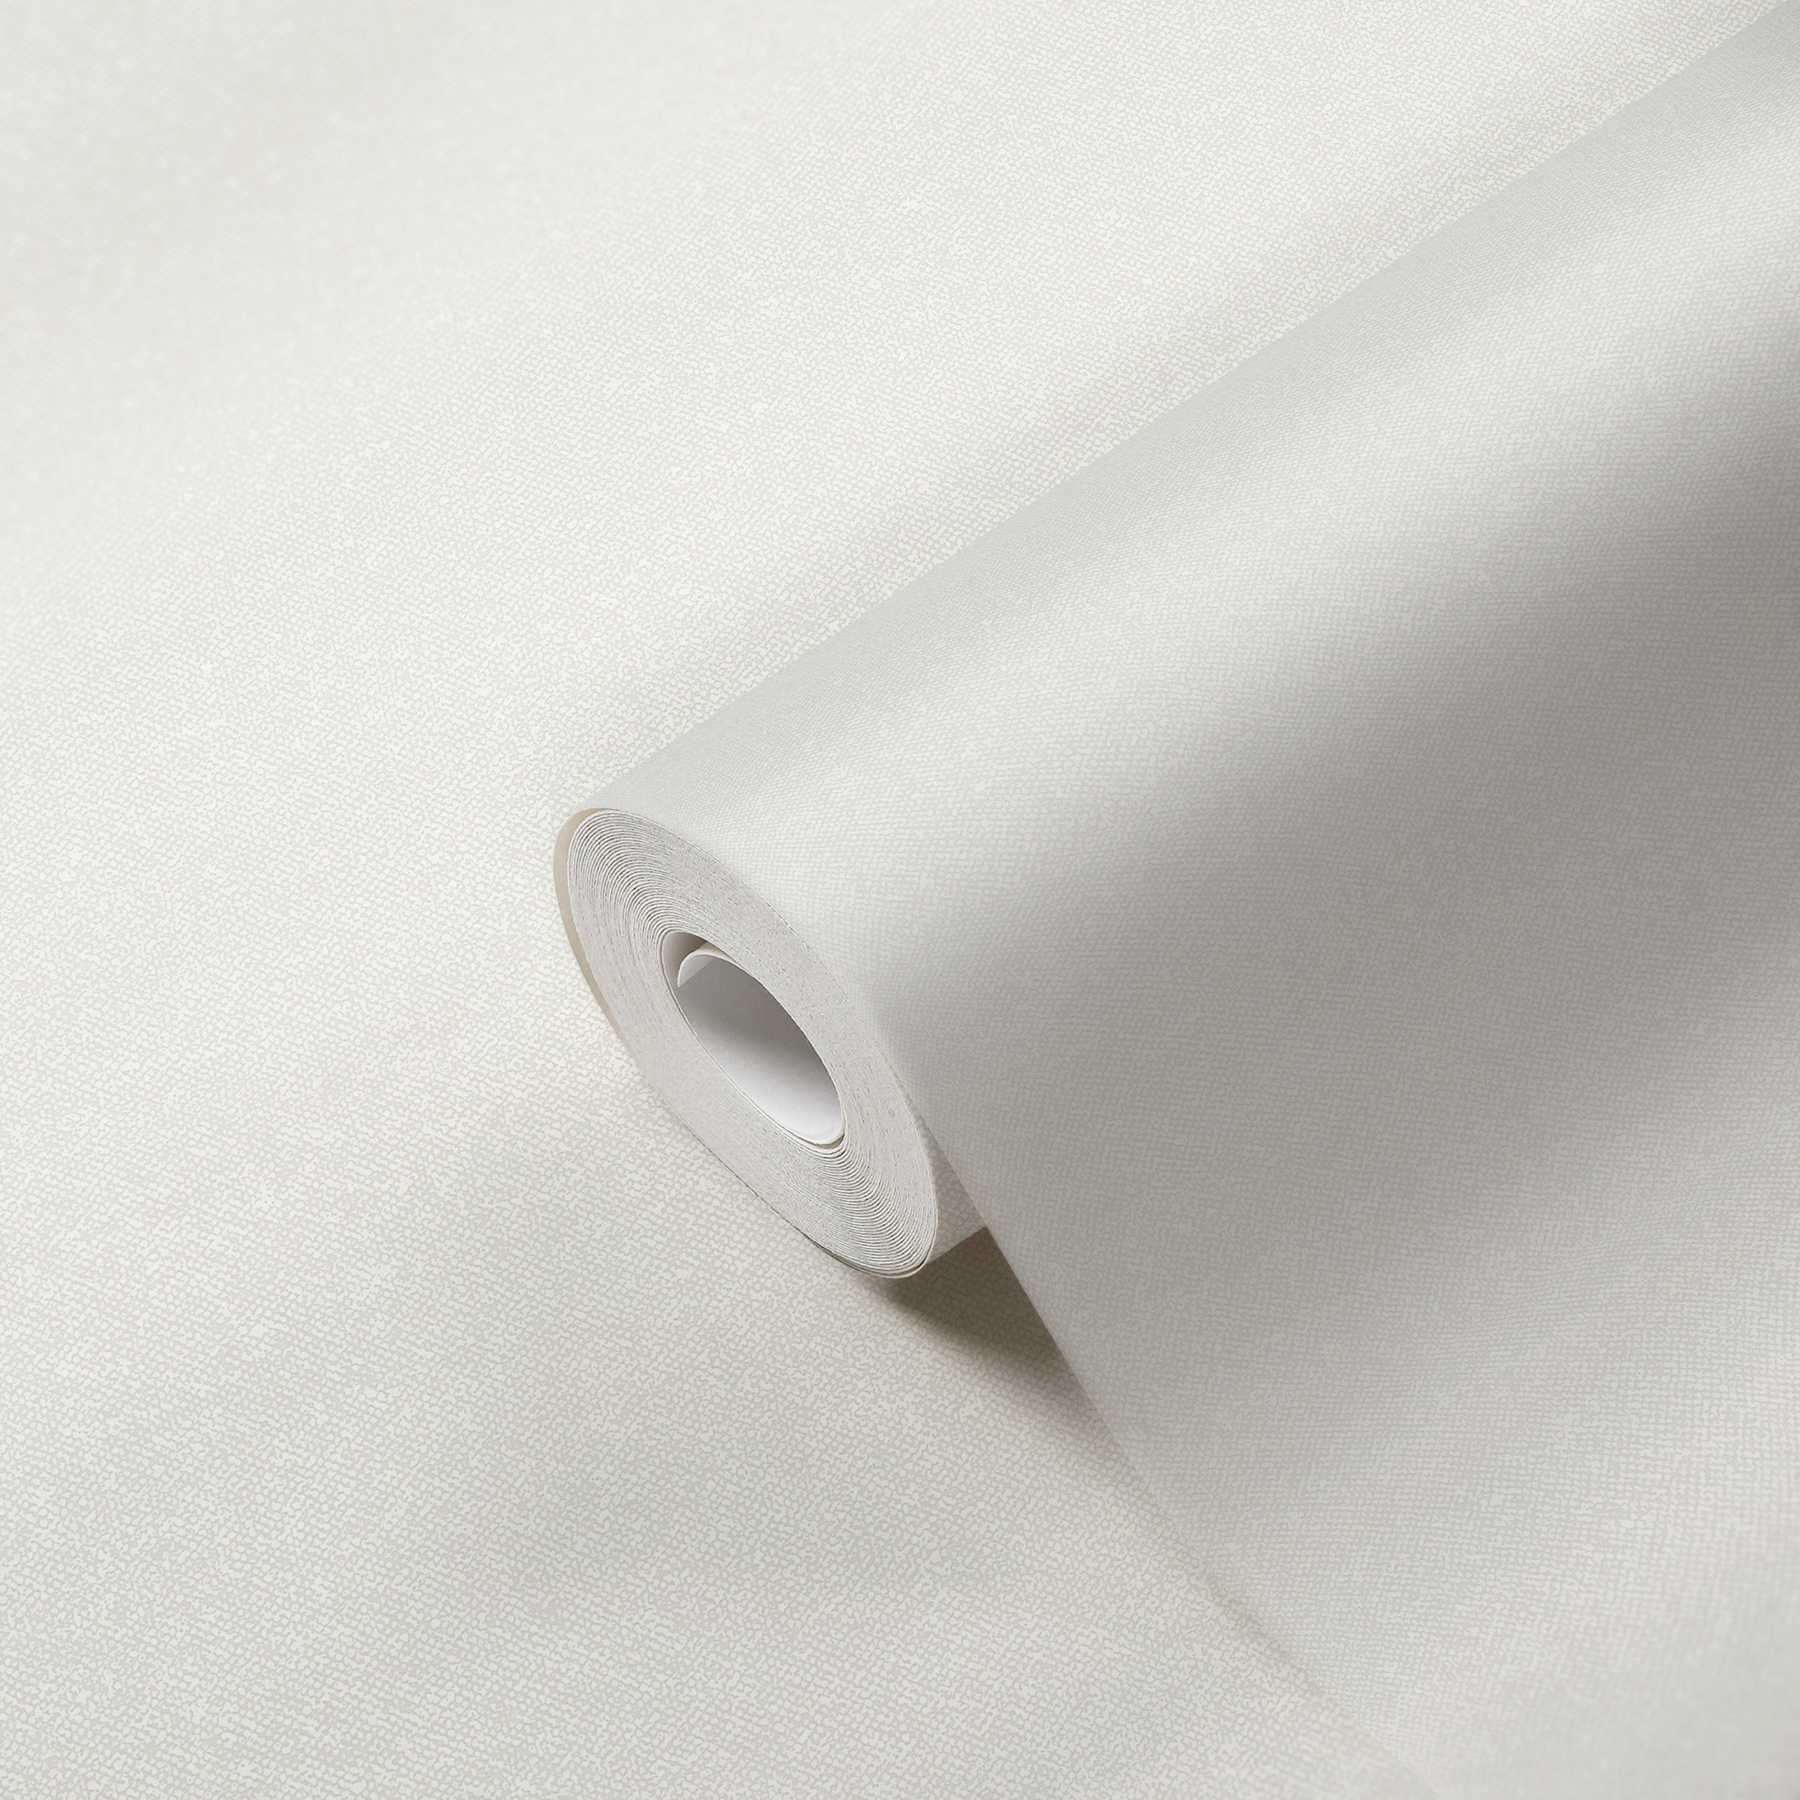             Papel pintado de aspecto textil liso - blanco, crema
        